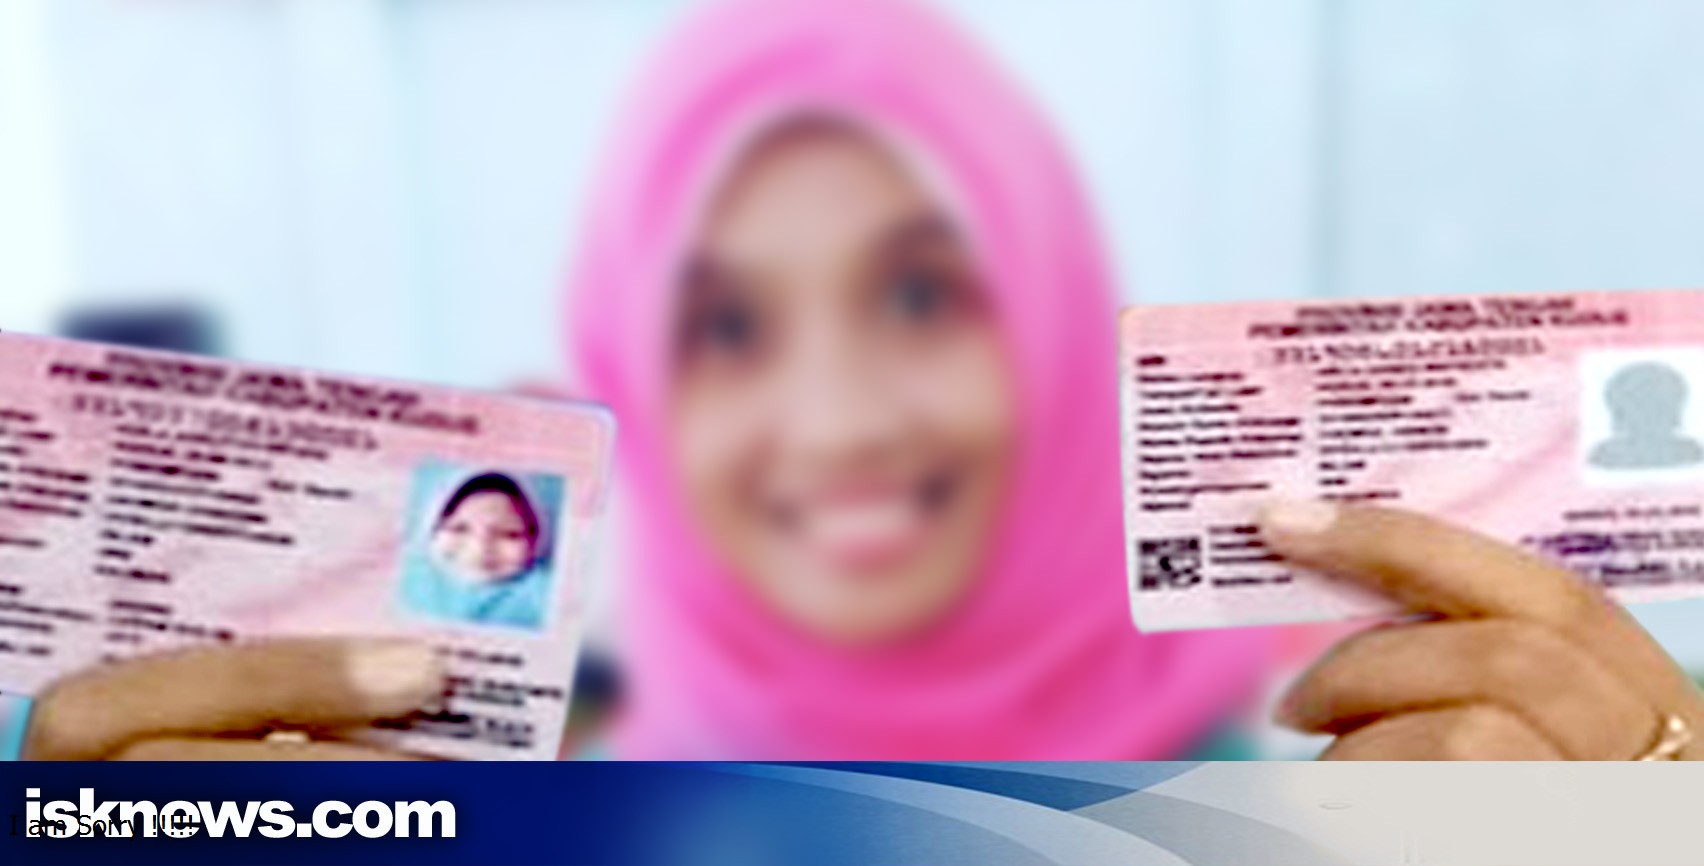 Download 90 Koleksi Background Kartu Identitas Anak Gratis